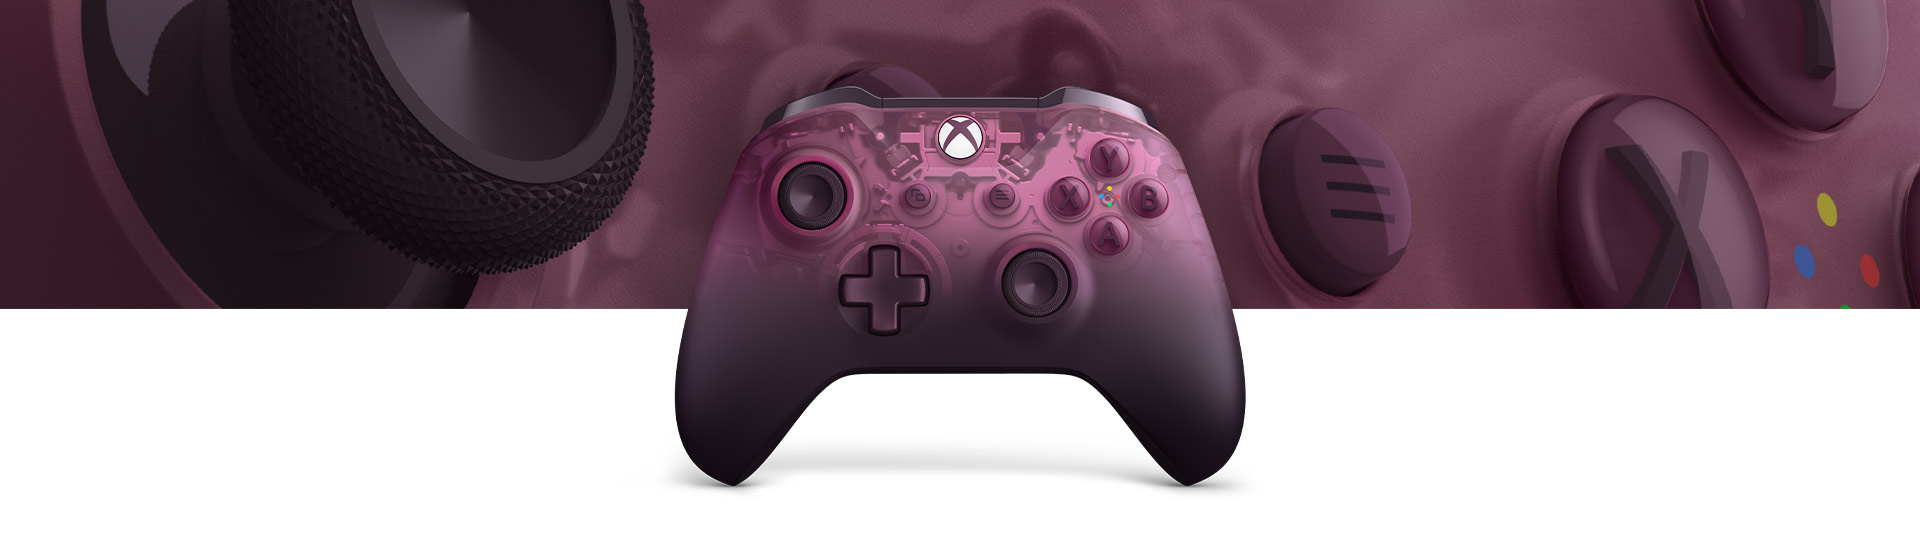 Oyun kumandası yüzey dokusunun yakından görünümü ile Xbox Kablosuz Oyun Kumandası - Phantom Magenta Special Edition